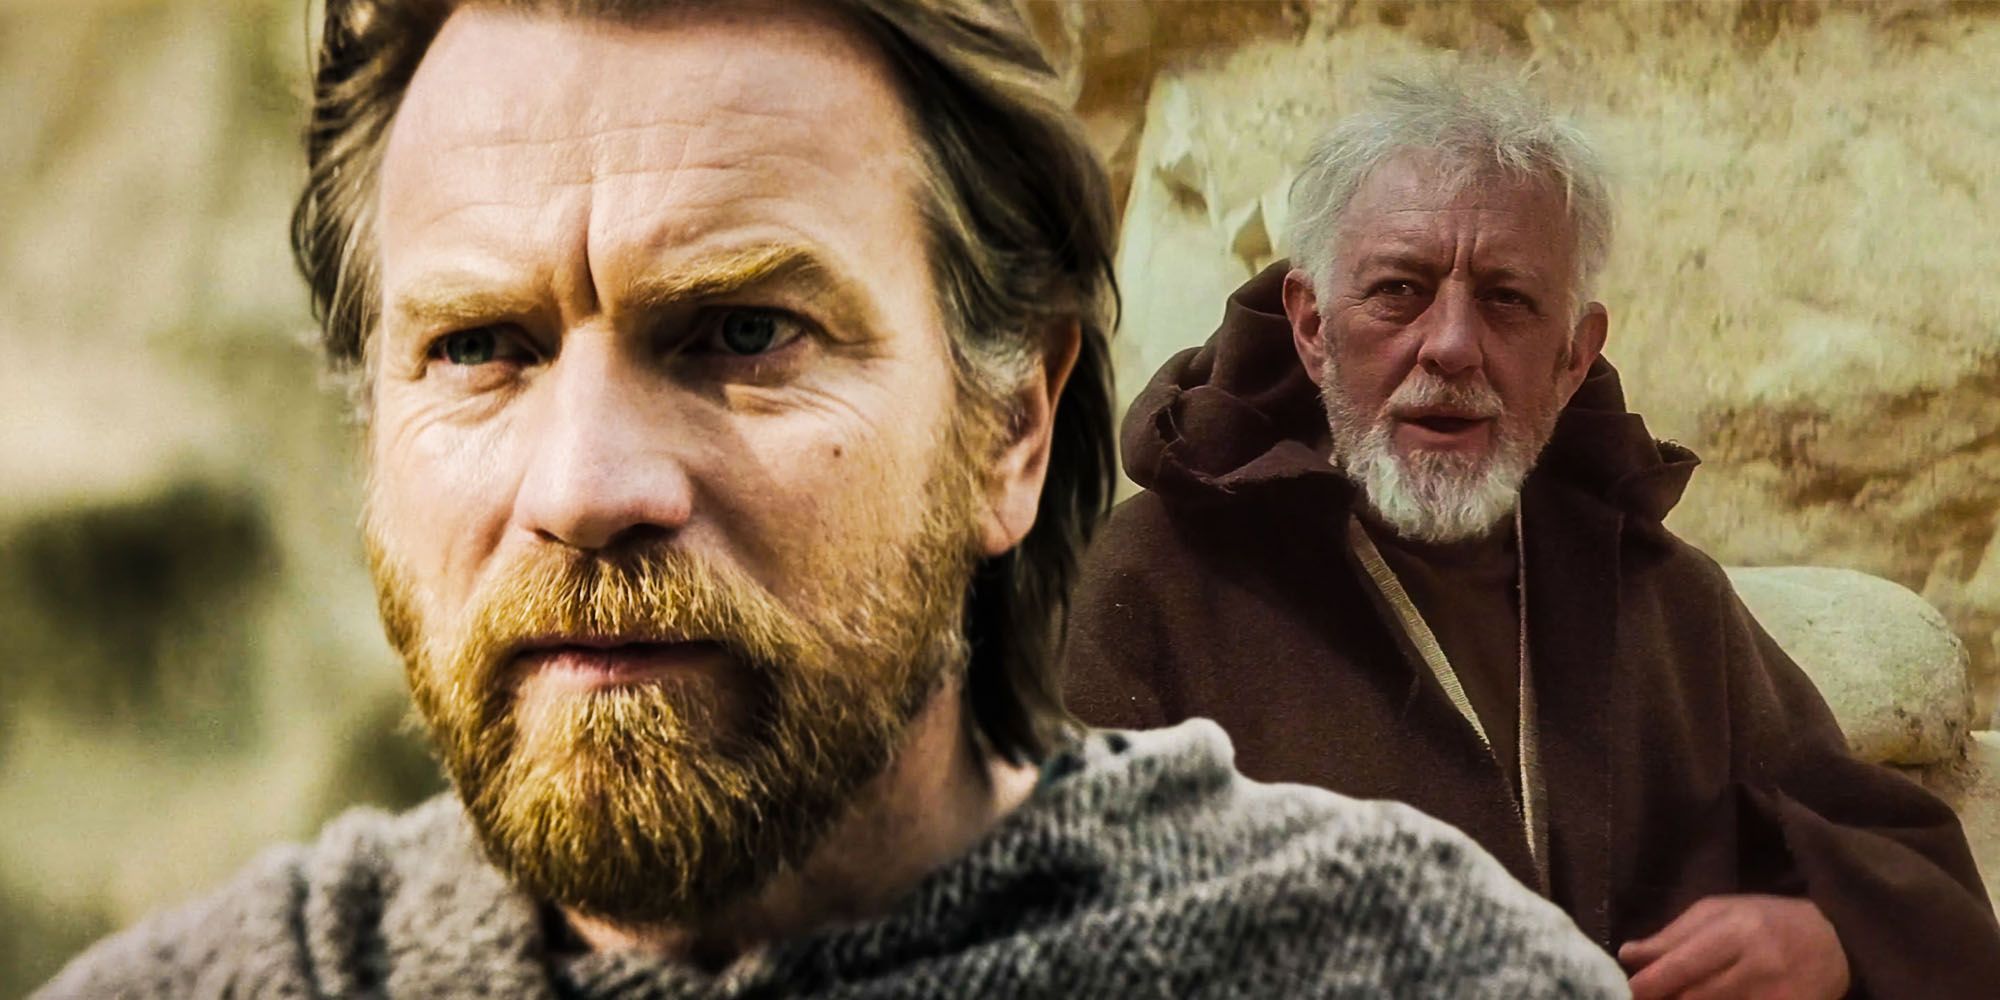 La genial teoría de Star Wars finalmente soluciona el agujero de la trama de edad de Obi-Wan Kenobi